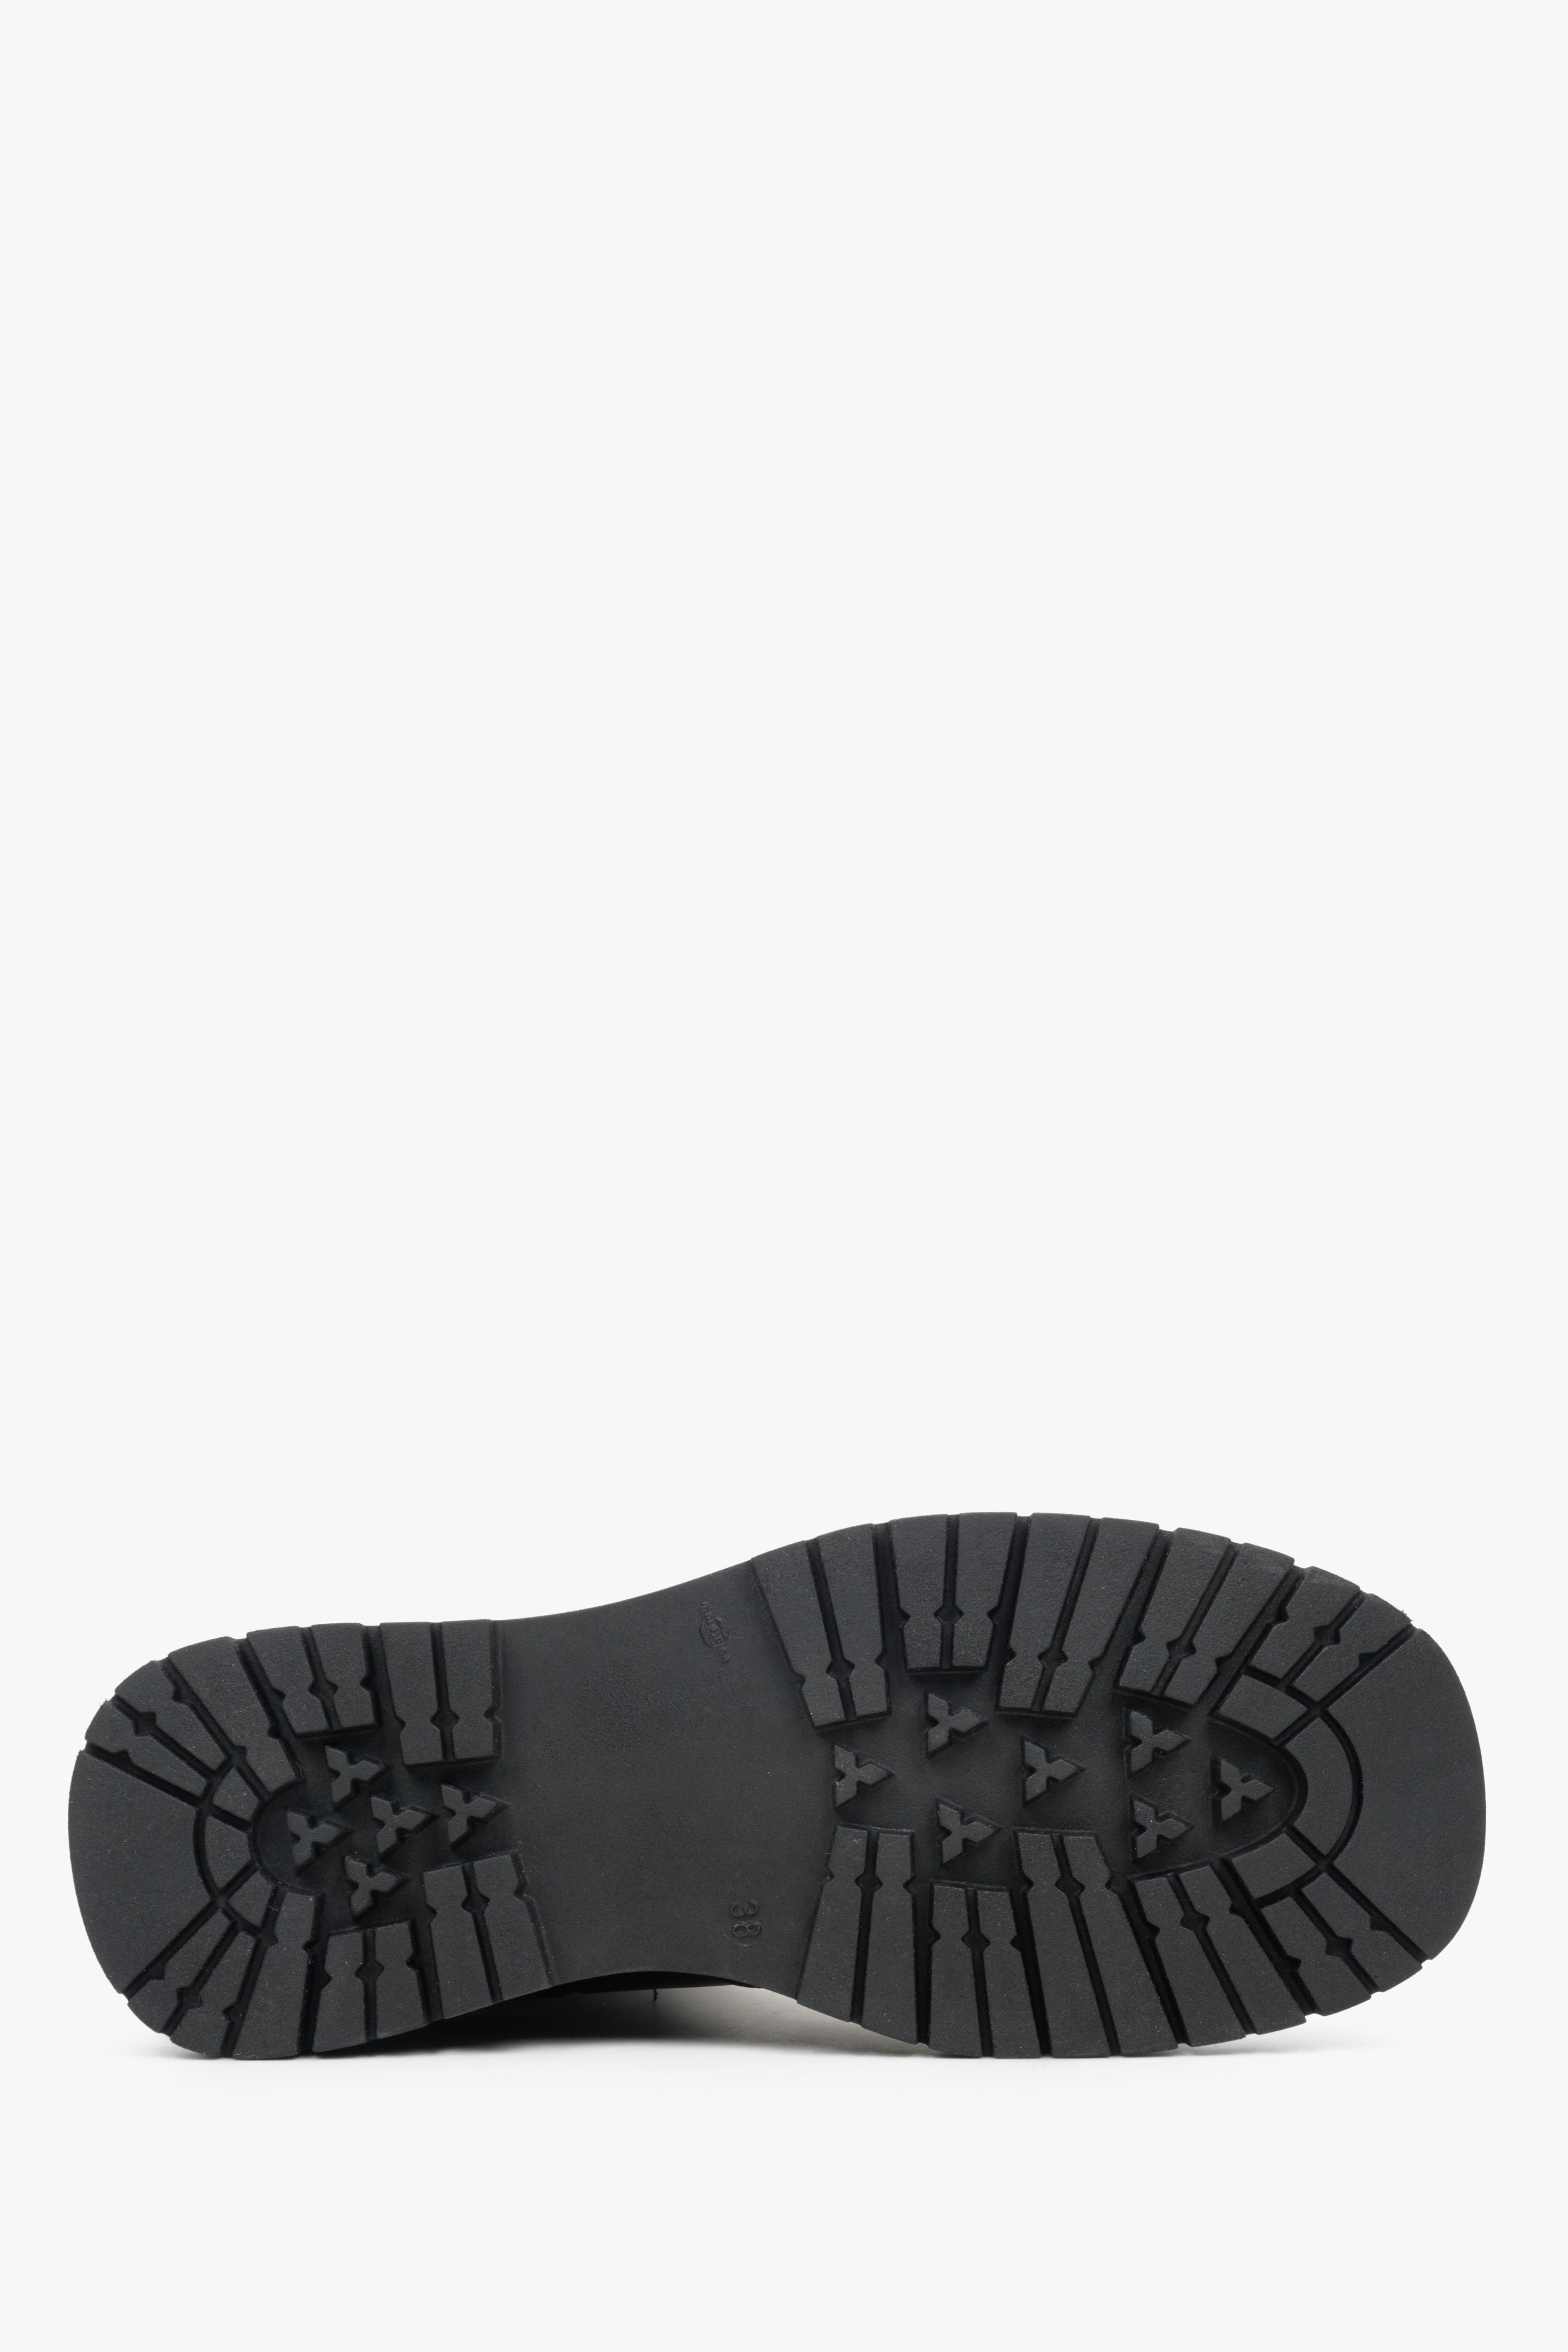 Botki damskie w kolorze czarnym na jesień ze skóry naturalnej marki Estro - zbliżenie na podeszwę buta.